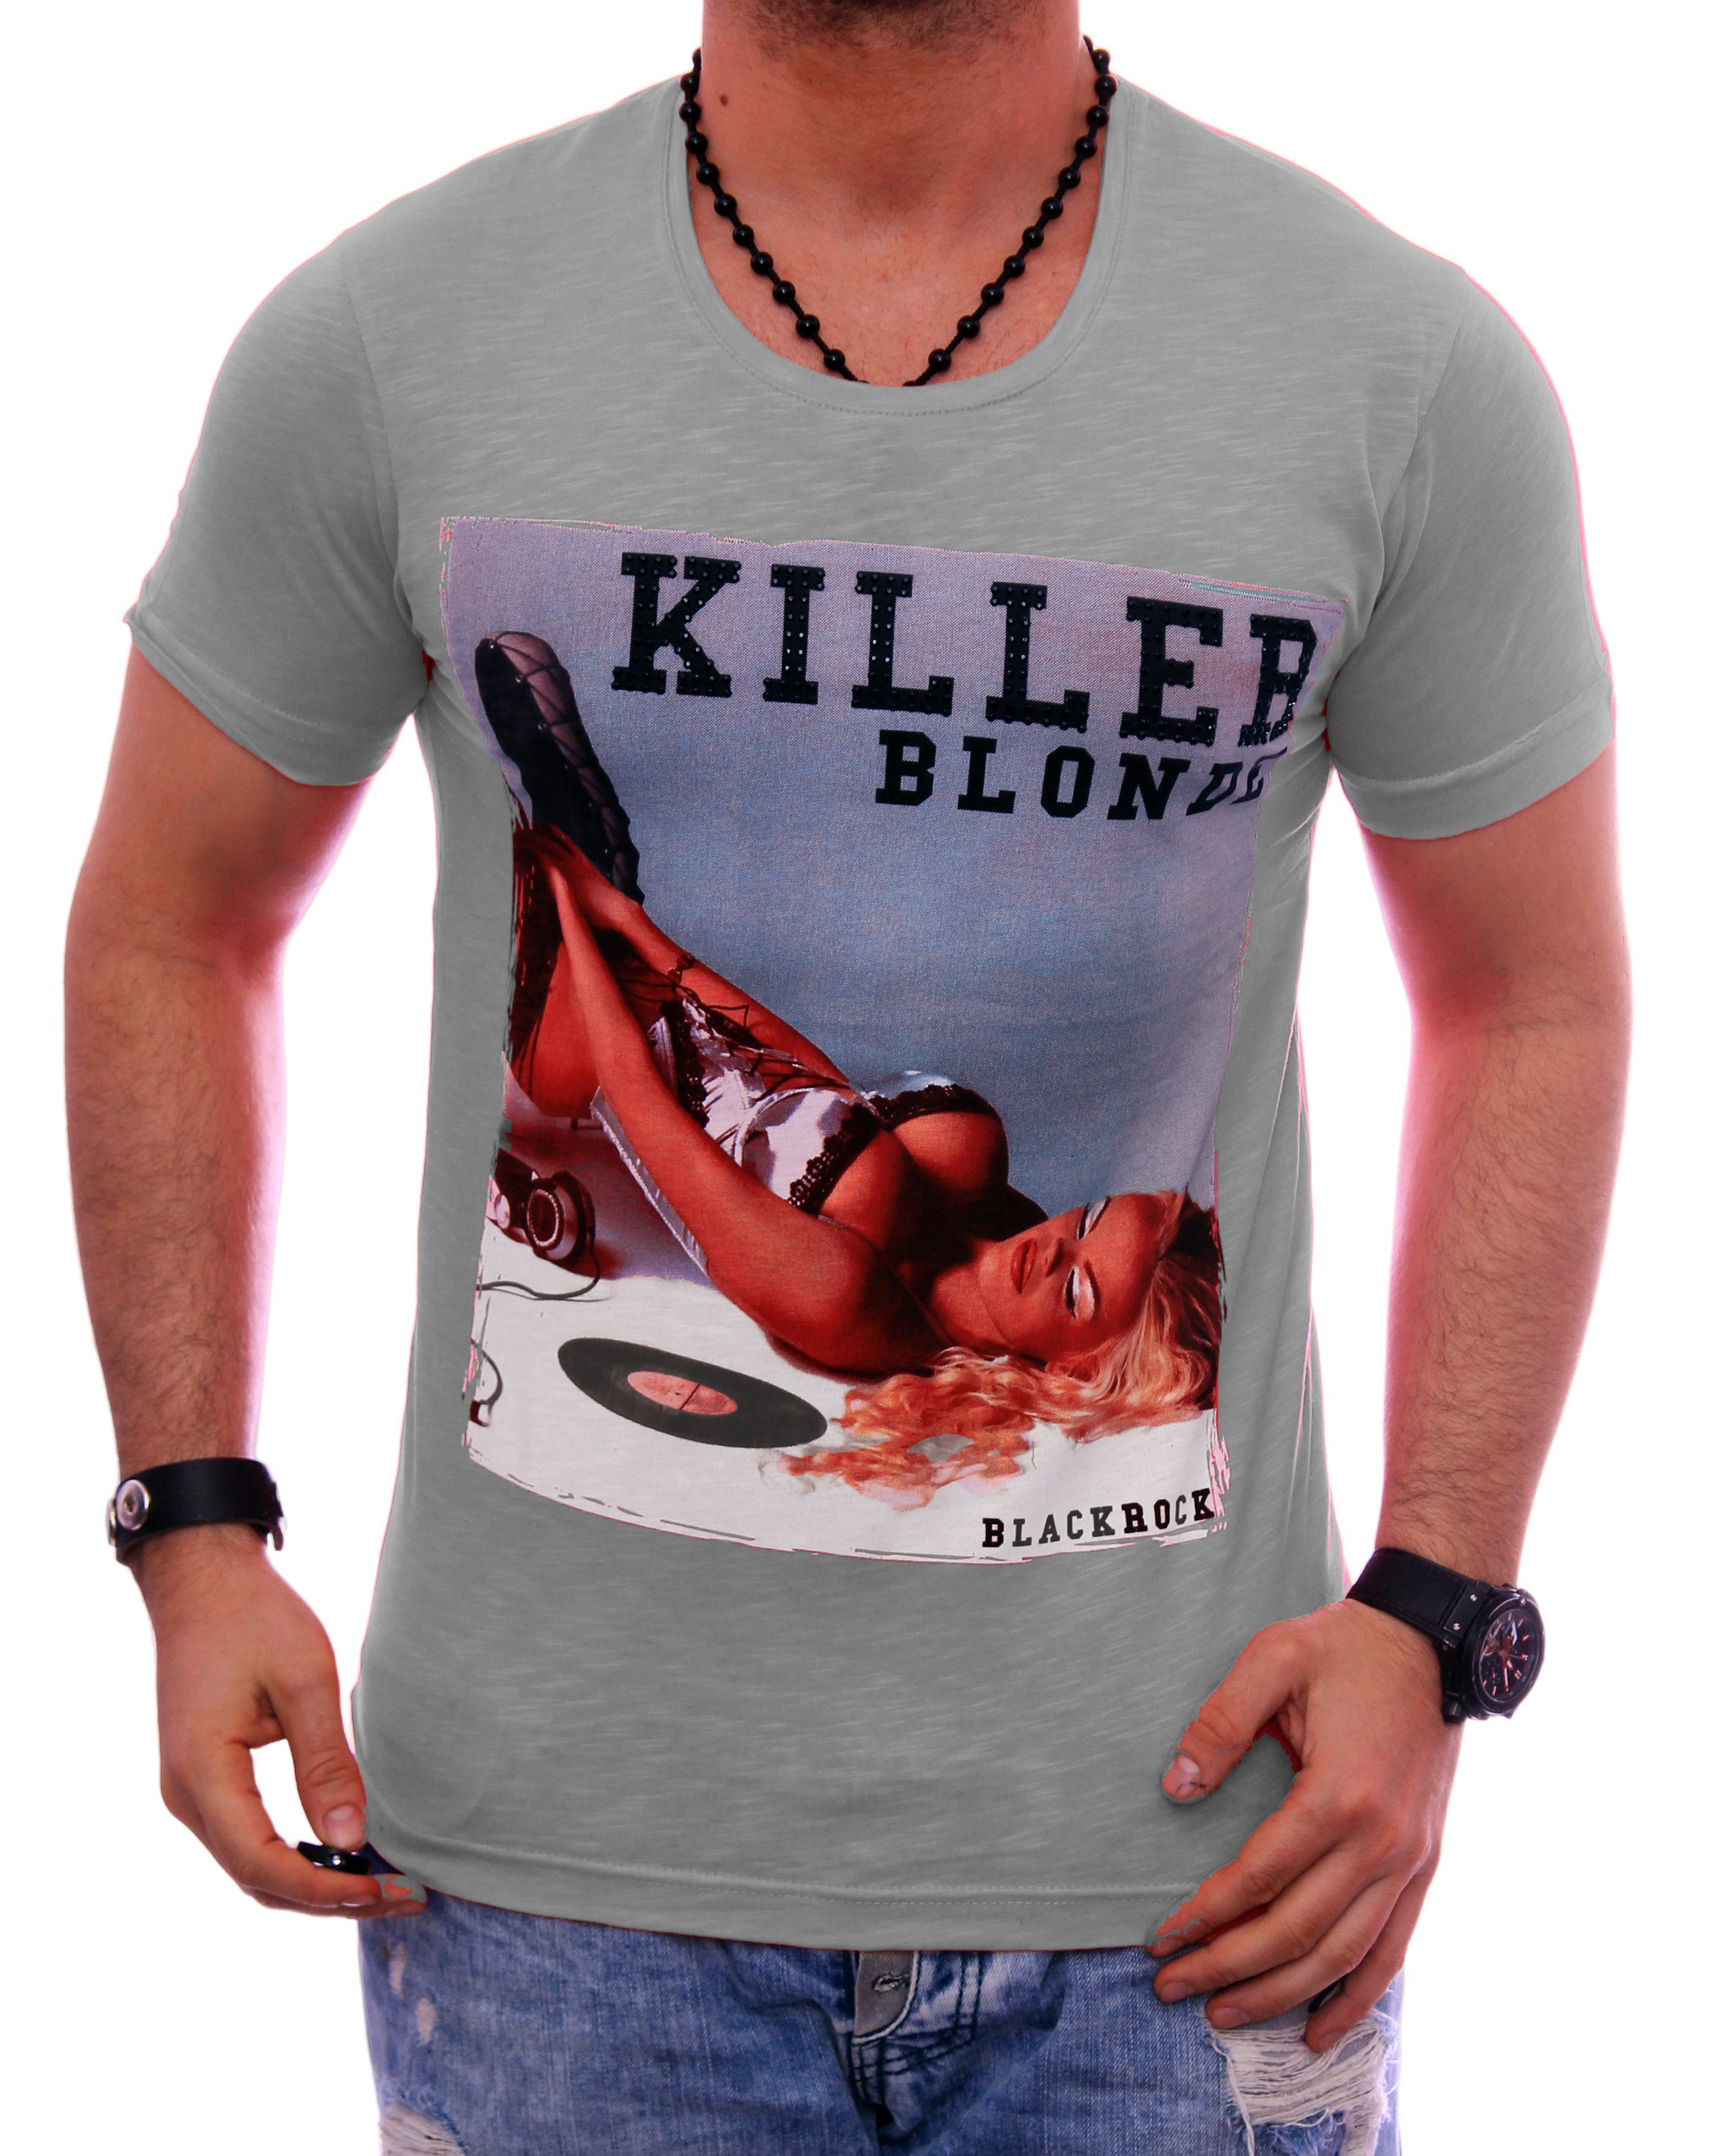 Herren Motiv Urlaub T-Shirt Slim-Fit T-Shirt kurzarm bedruckt Strasssteine BLACKROCK Print Rundhals Shirt Grau